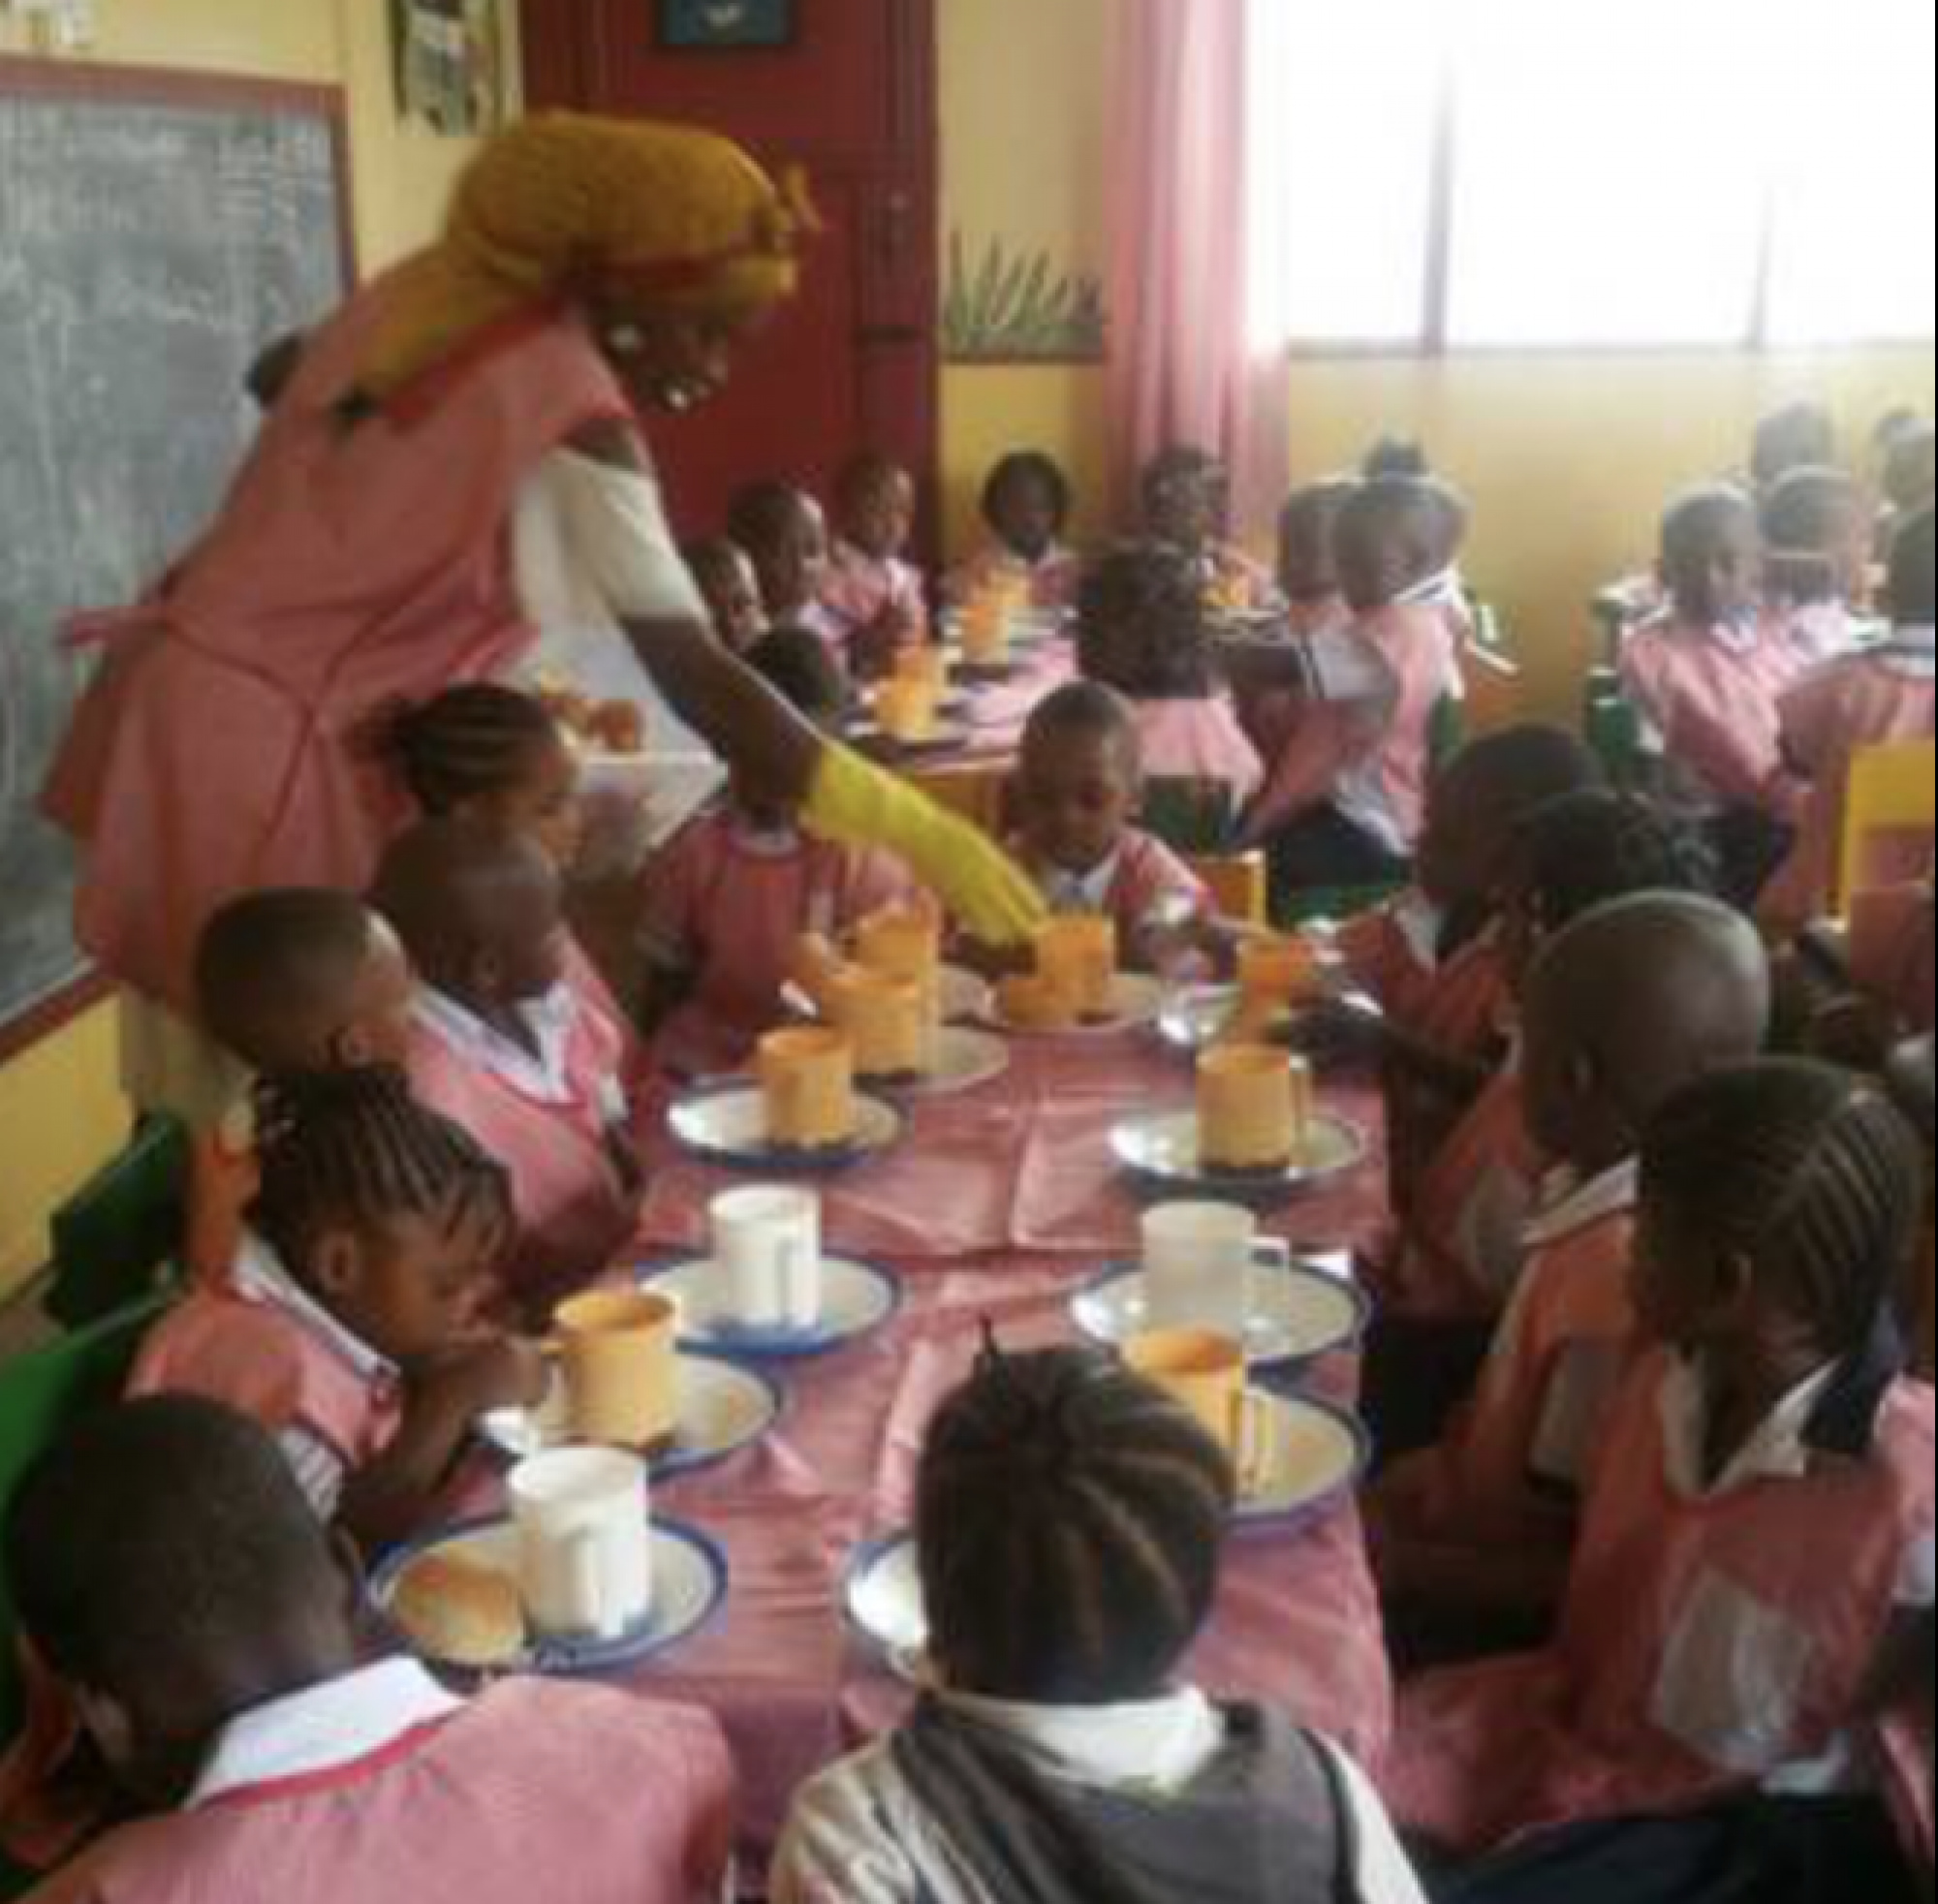 Großzügige Spende sichert ein Jahr lang tägliche Mahlzeit für Schulkinder